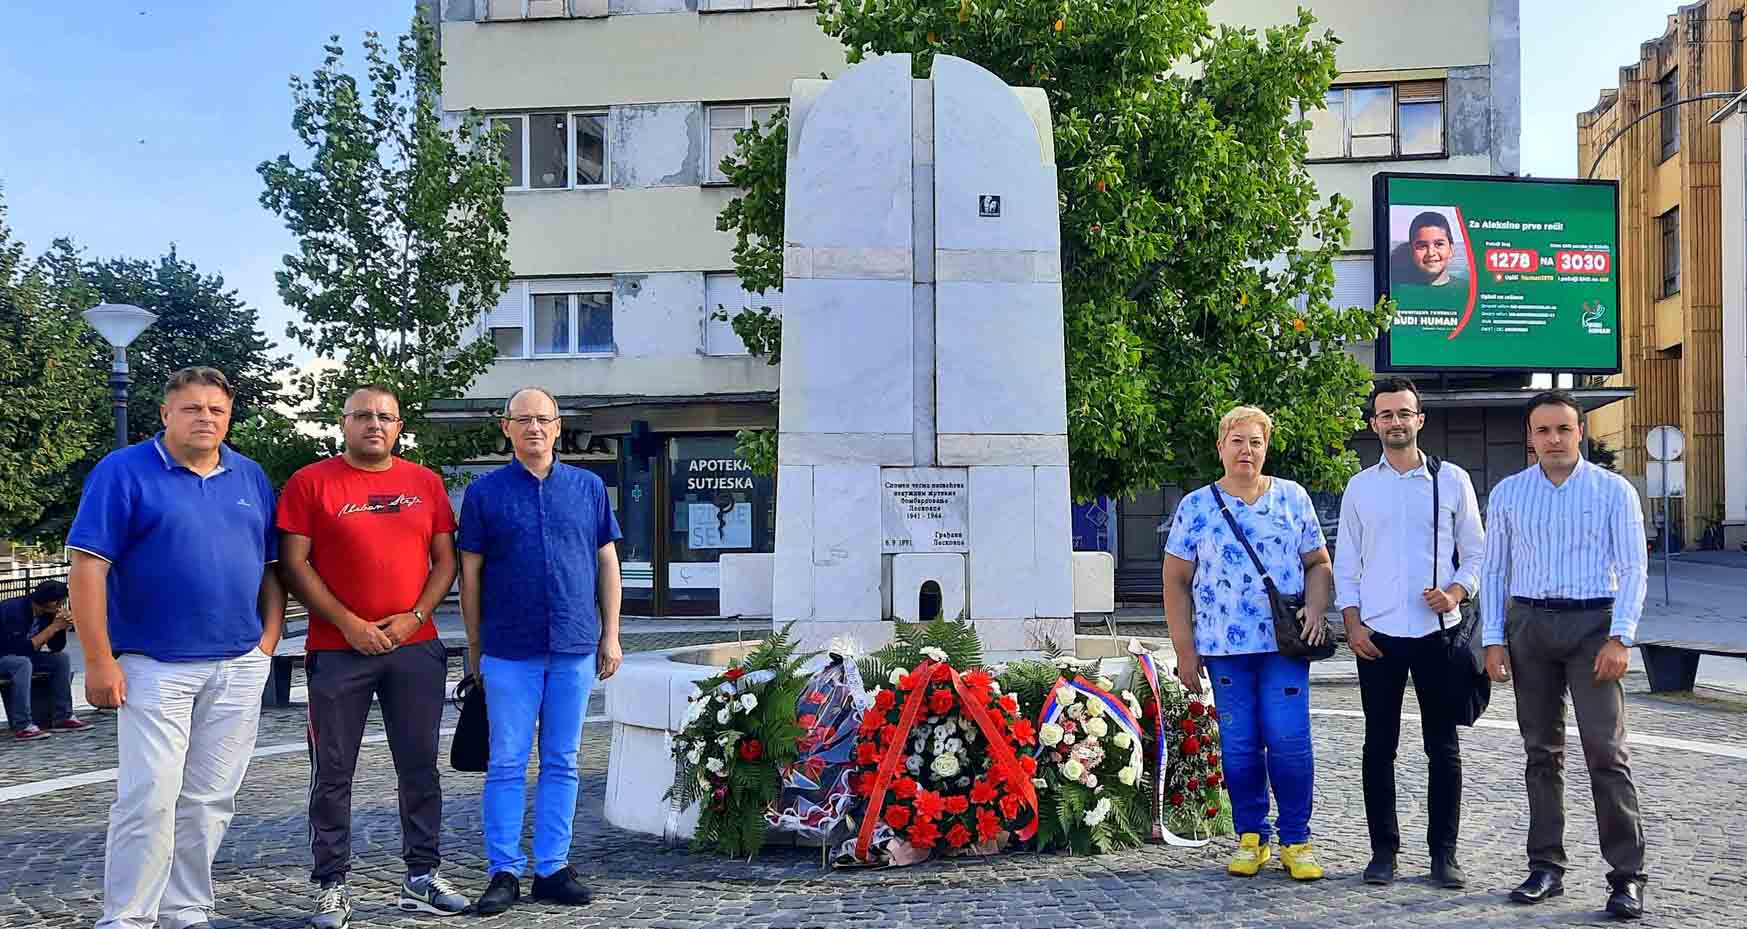 Народна странка Лесковац: Партизански командант Коча Поповић захтевао бомбардовање града и надгледао разарања